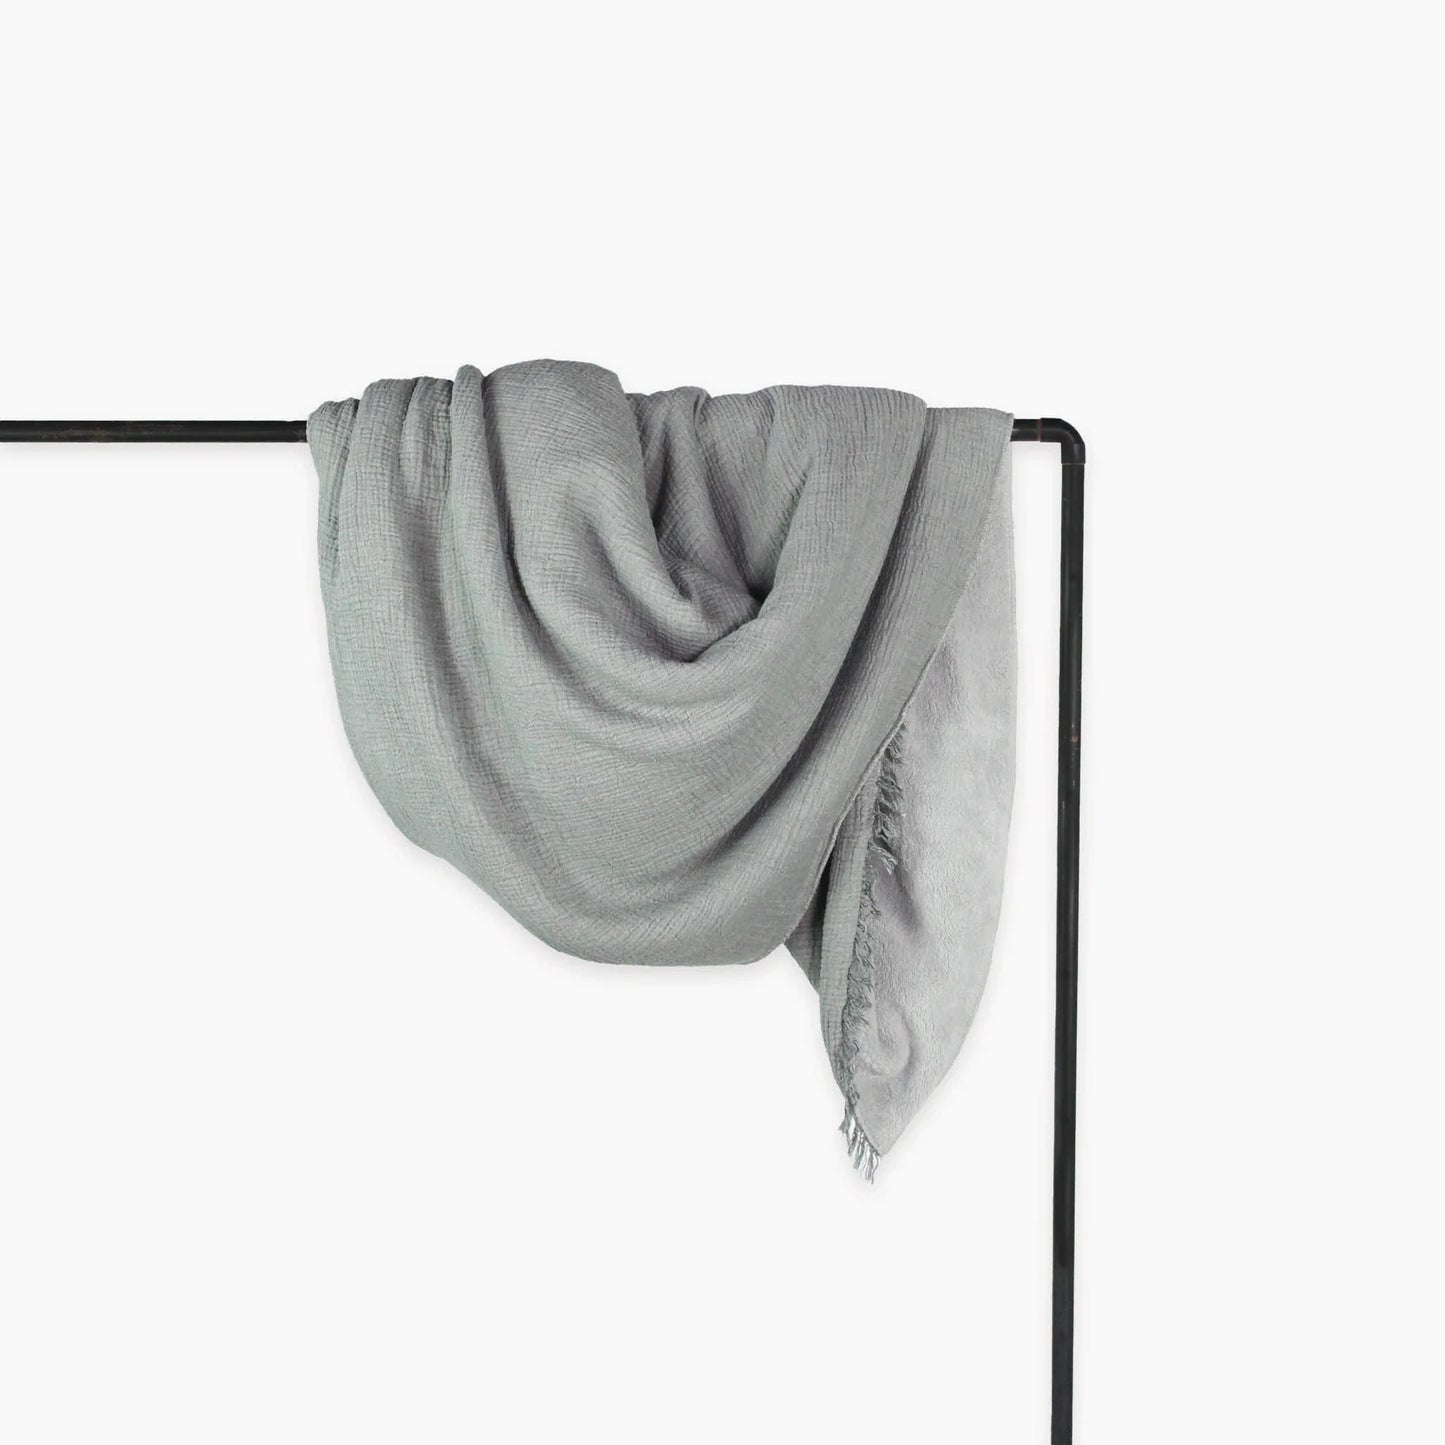 Crinkle Fleece Lined Throw - Charcoal Grey